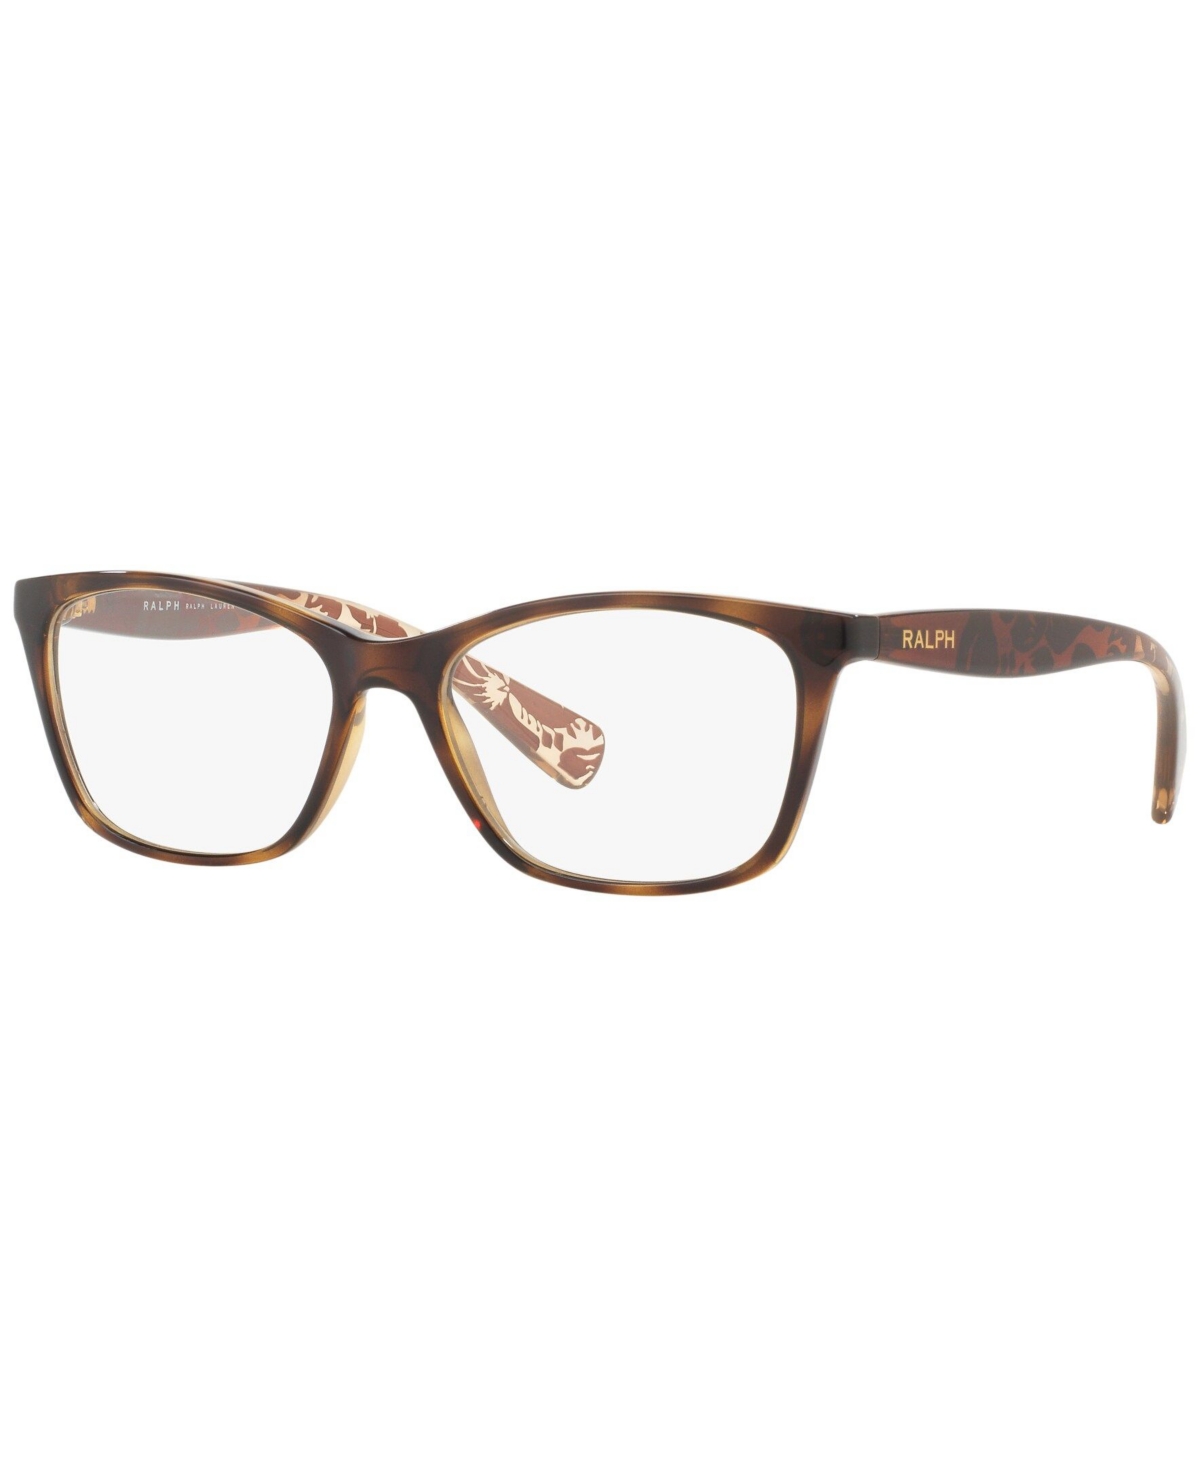 Ralph Lauren RA7071 Women's Cat Eye Eyeglasses - Gray Gradi